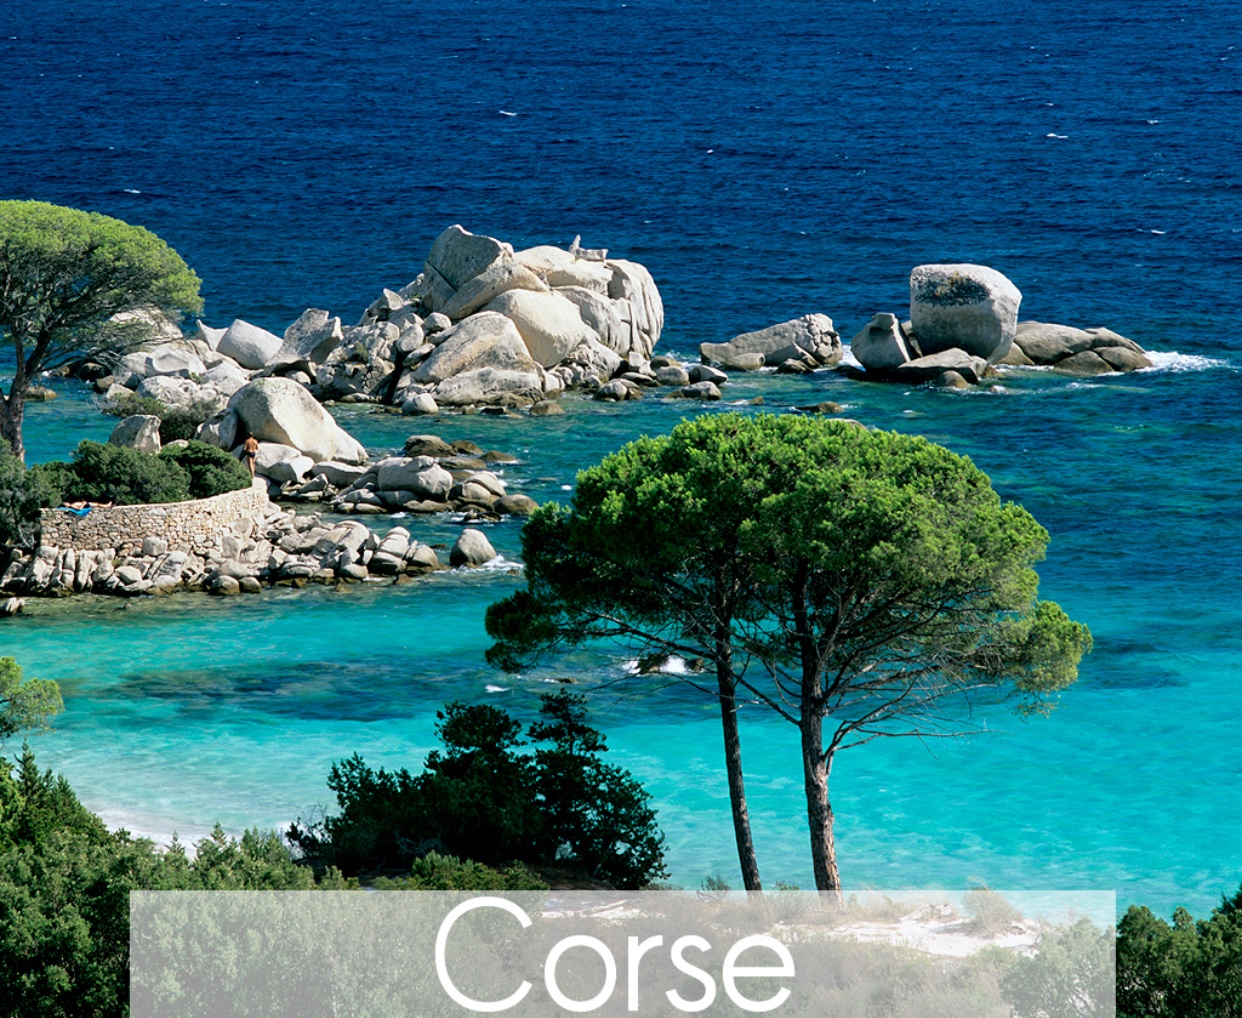 La Corse possède des eaux bleues.